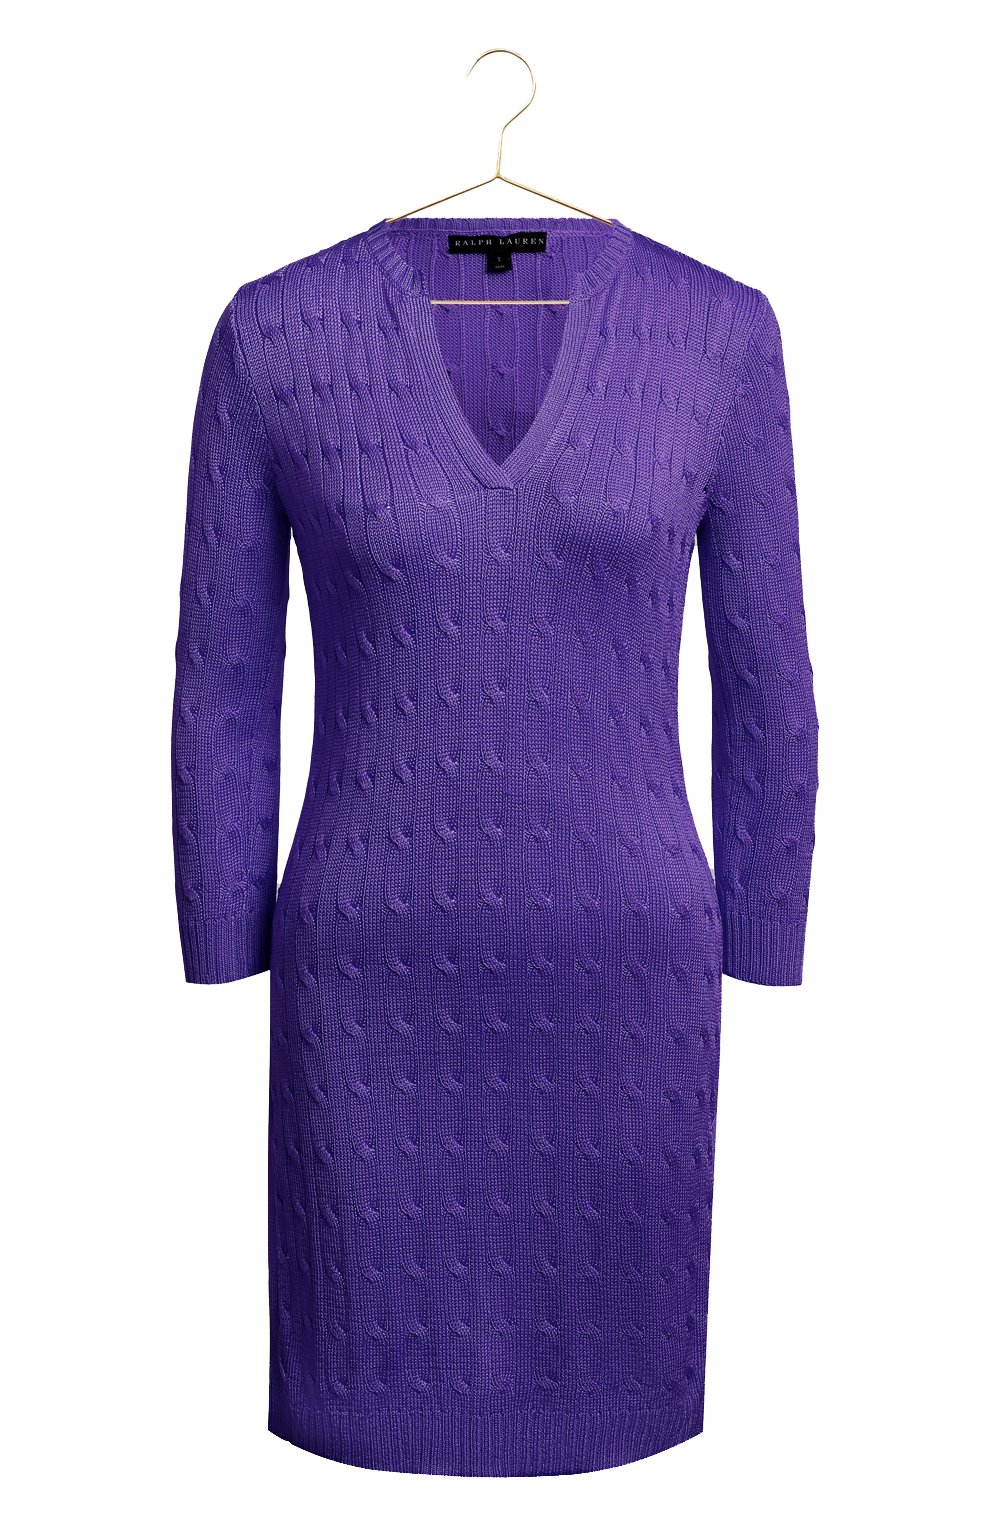 Шелковое платье | Ralph Lauren | Фиолетовый - 1